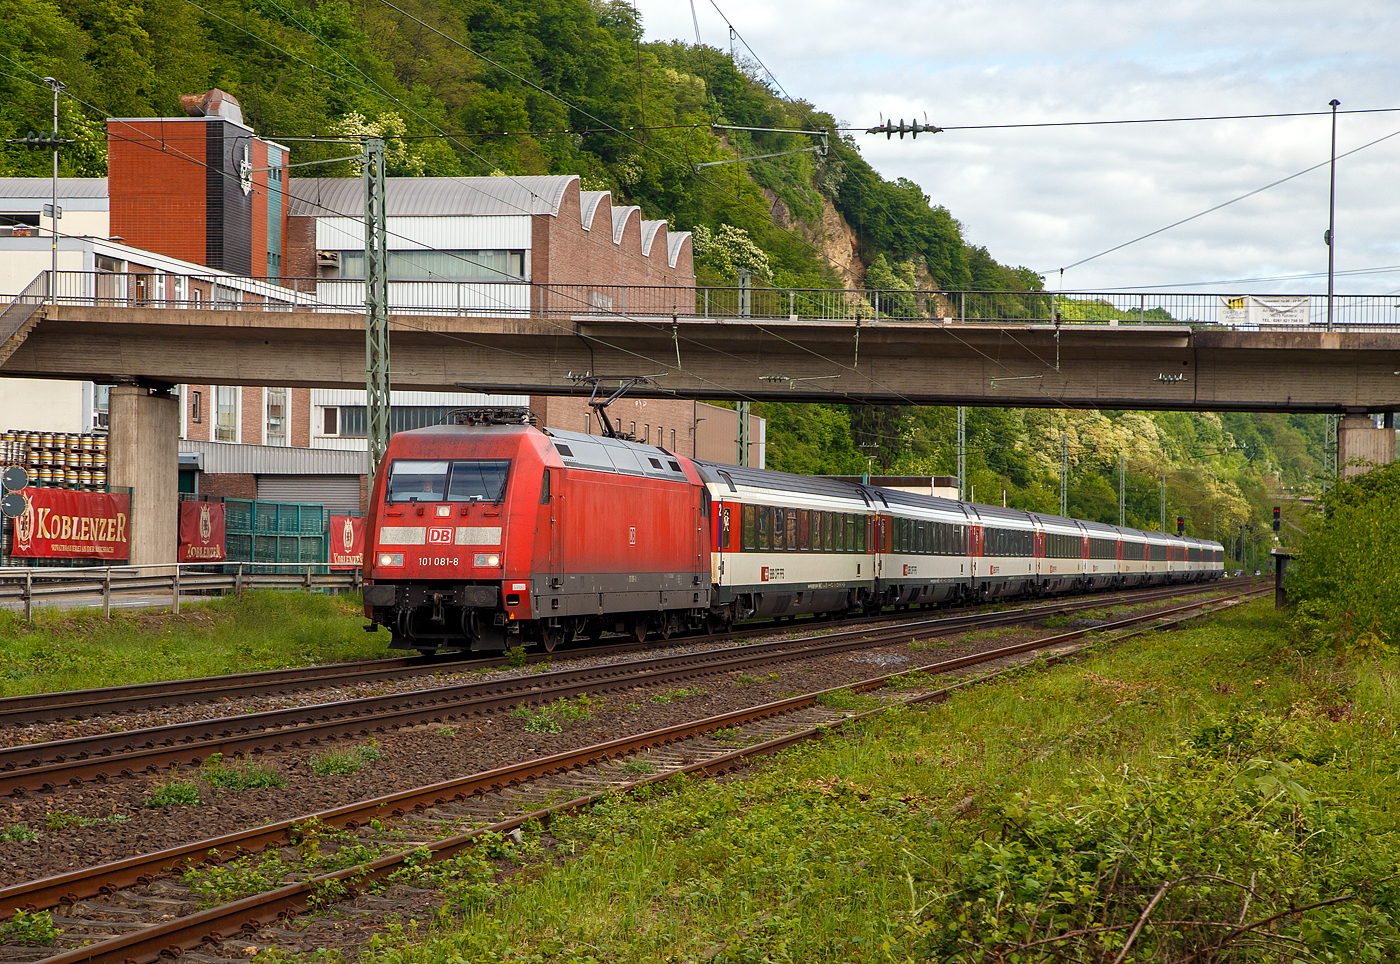 Die 101 081-8 (91 80 6101 081-8 D-DB) der DB Fernverkehr AG, fhrt am 28.04.2018, mit einem EC bestehend aus SBB EuroCity-Wagen, auf der Linken Rheinstrecke (KBS 471) durch Koblenz-Oberwerth, in Richtung Mainz bzw. Schweiz.

Die EuroCity-Wagen (Apm EC und Bpm EC) der SBB sind zwar nach hnlichen Prinzipien aufgebaut worden, werden aber in der Schweiz nicht als Einheitswagen bezeichnet. 

Die Lok wurde 1996 von ADtranz (ABB Daimler-Benz Transportation GmbH) in Kassel unter der Fabriknummer 33191 gebaut.